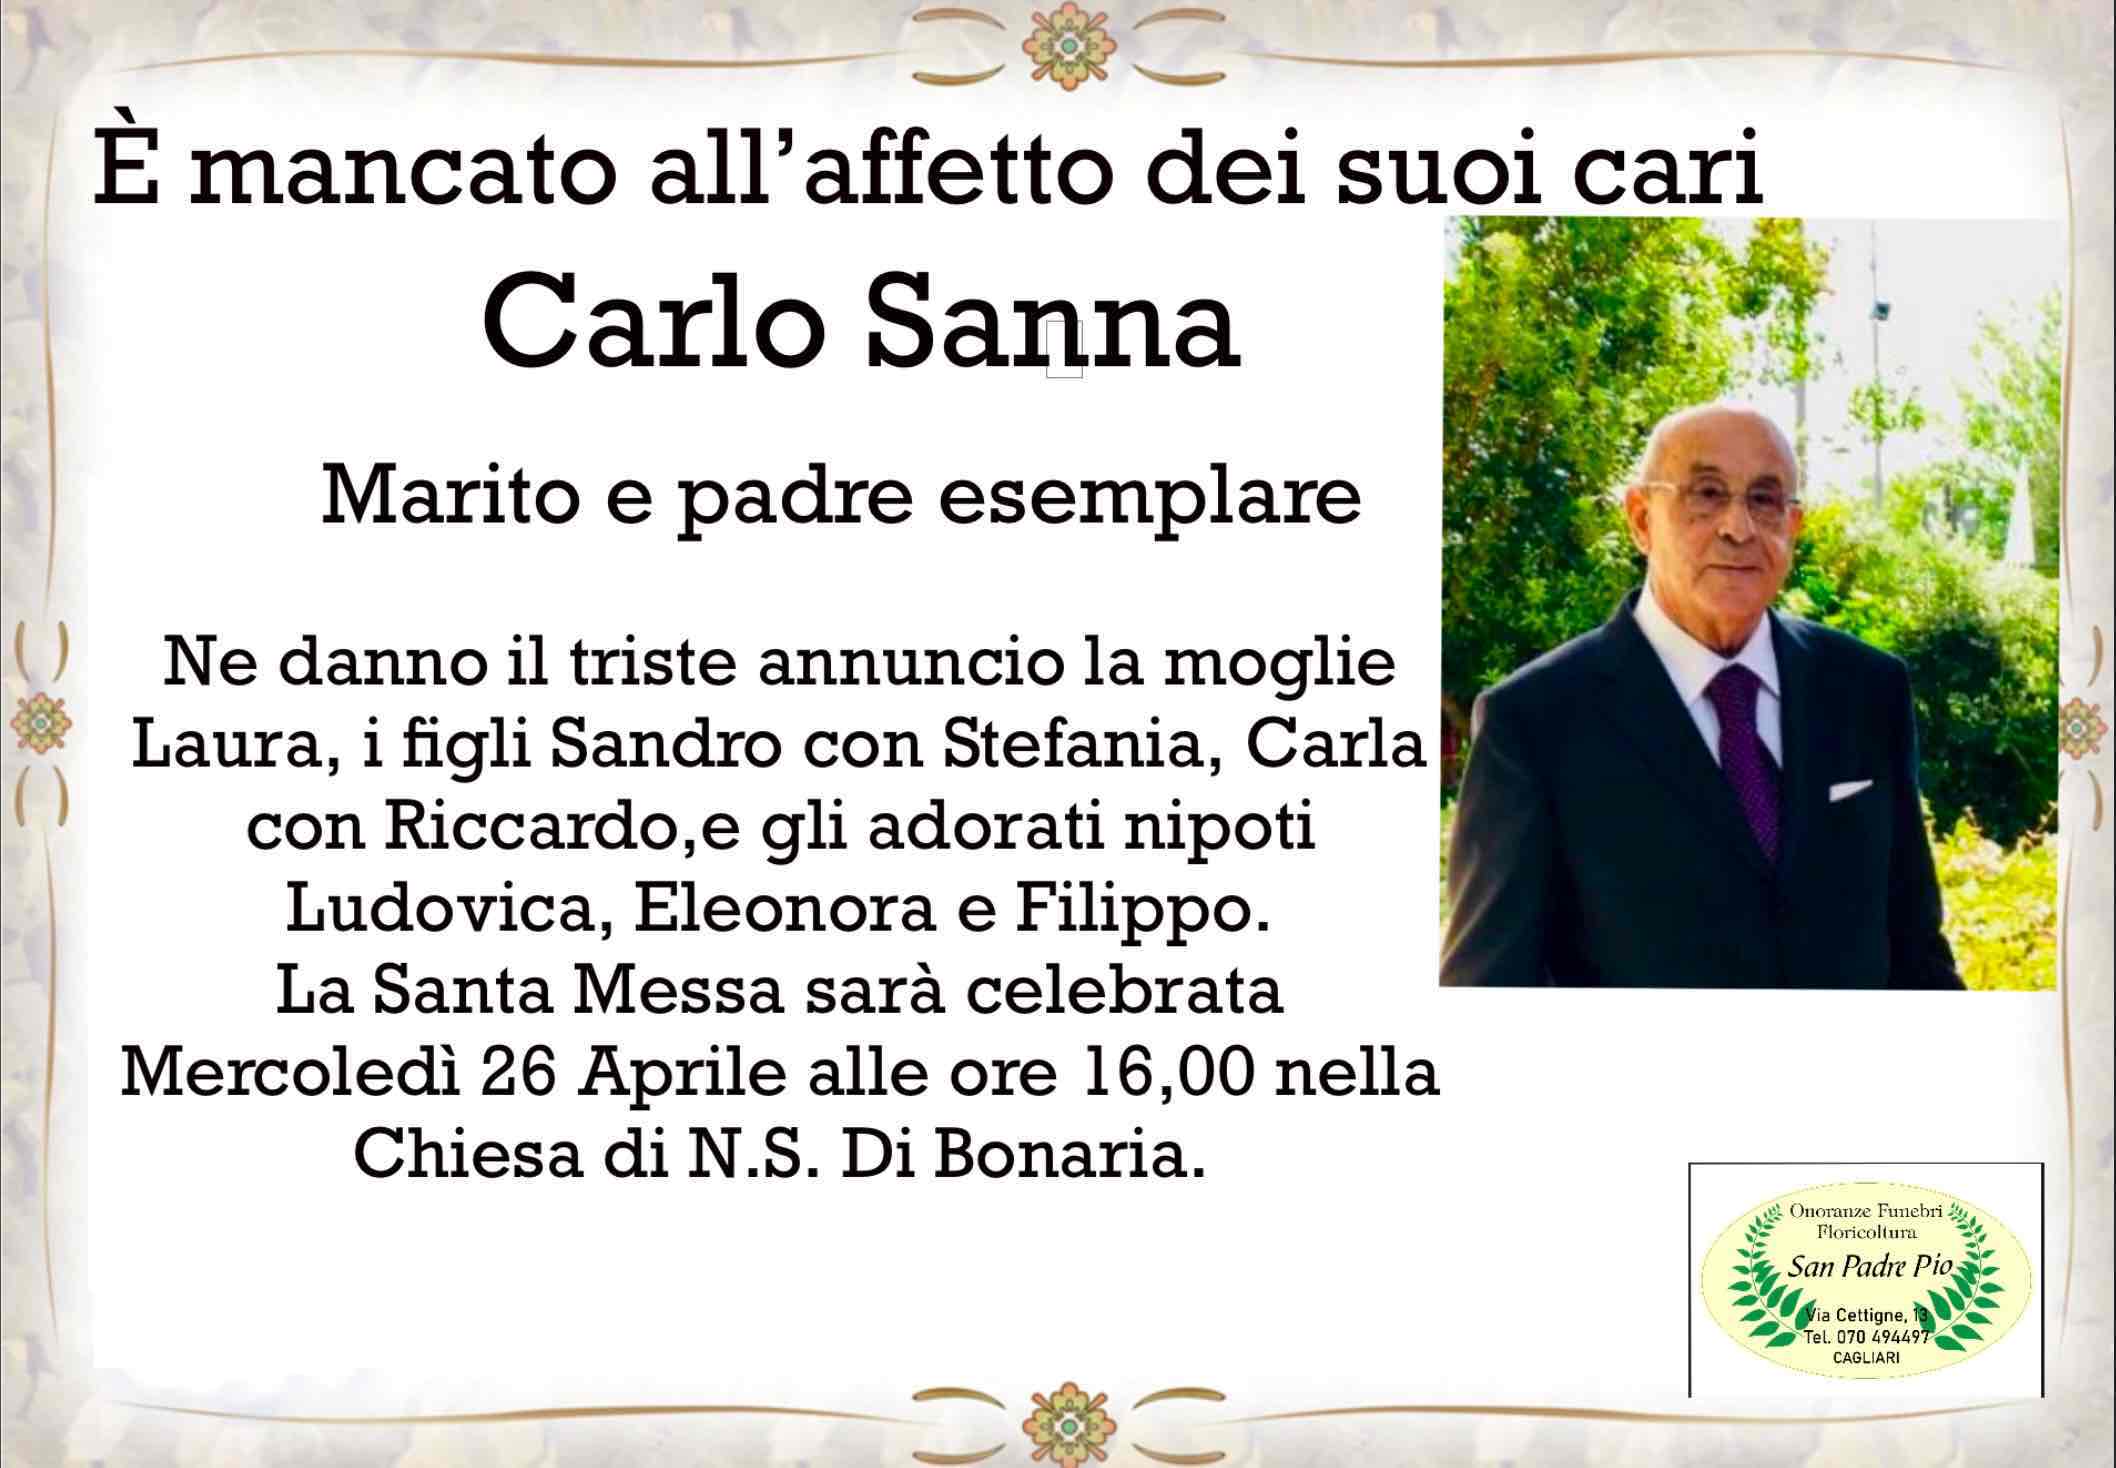 Carlo Sanna